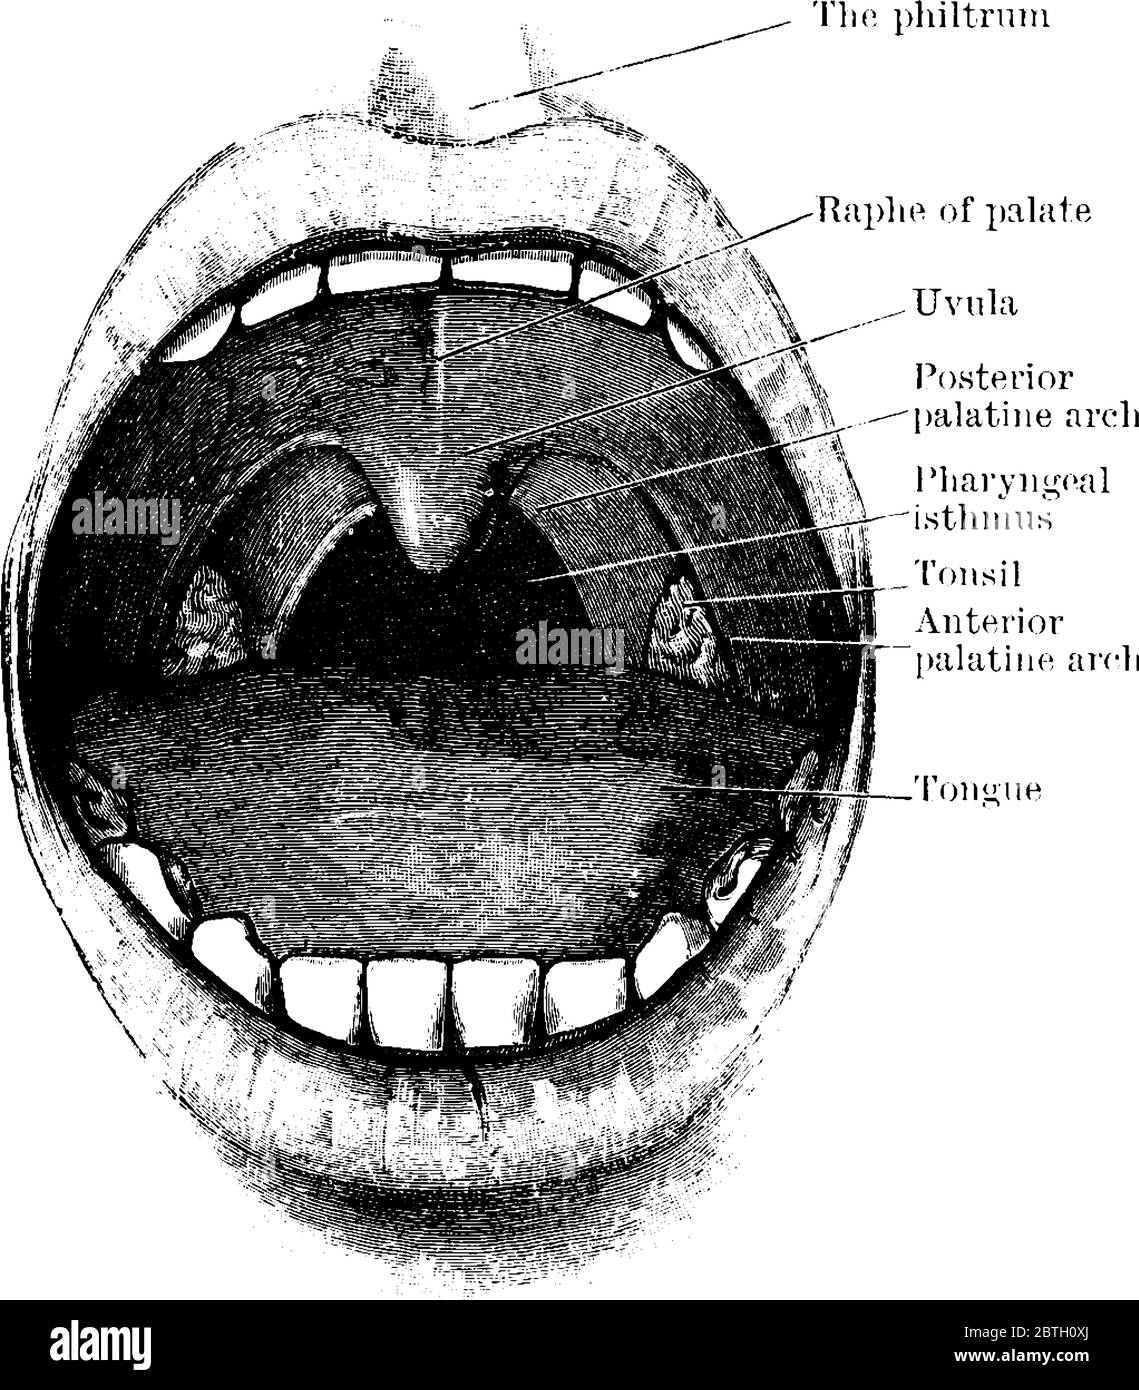 Una bocca aperta che mostra il palato e le tonsille, i due archi palatini e l'istmo faringeo, disegno di linee d'epoca o illustrazione dell'incisione. Illustrazione Vettoriale